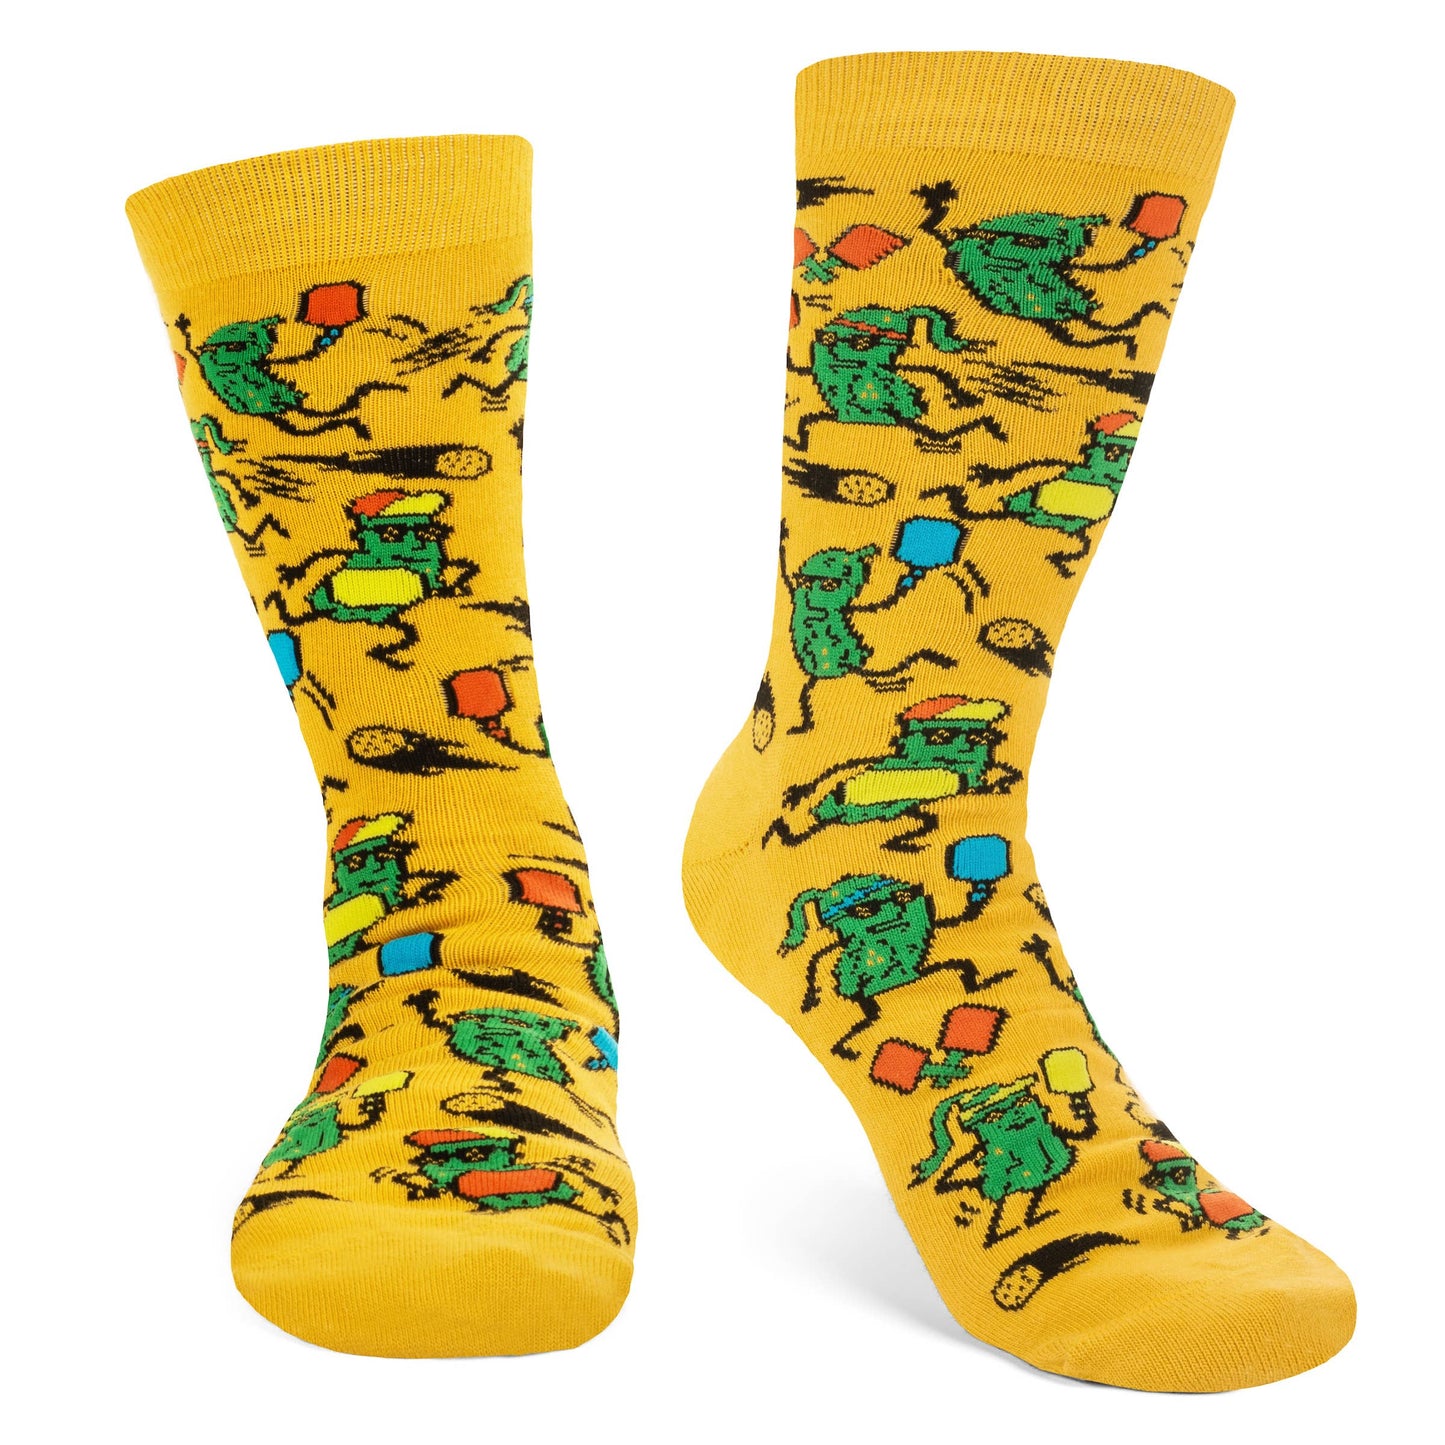 Lavley - Pickleballer Socks